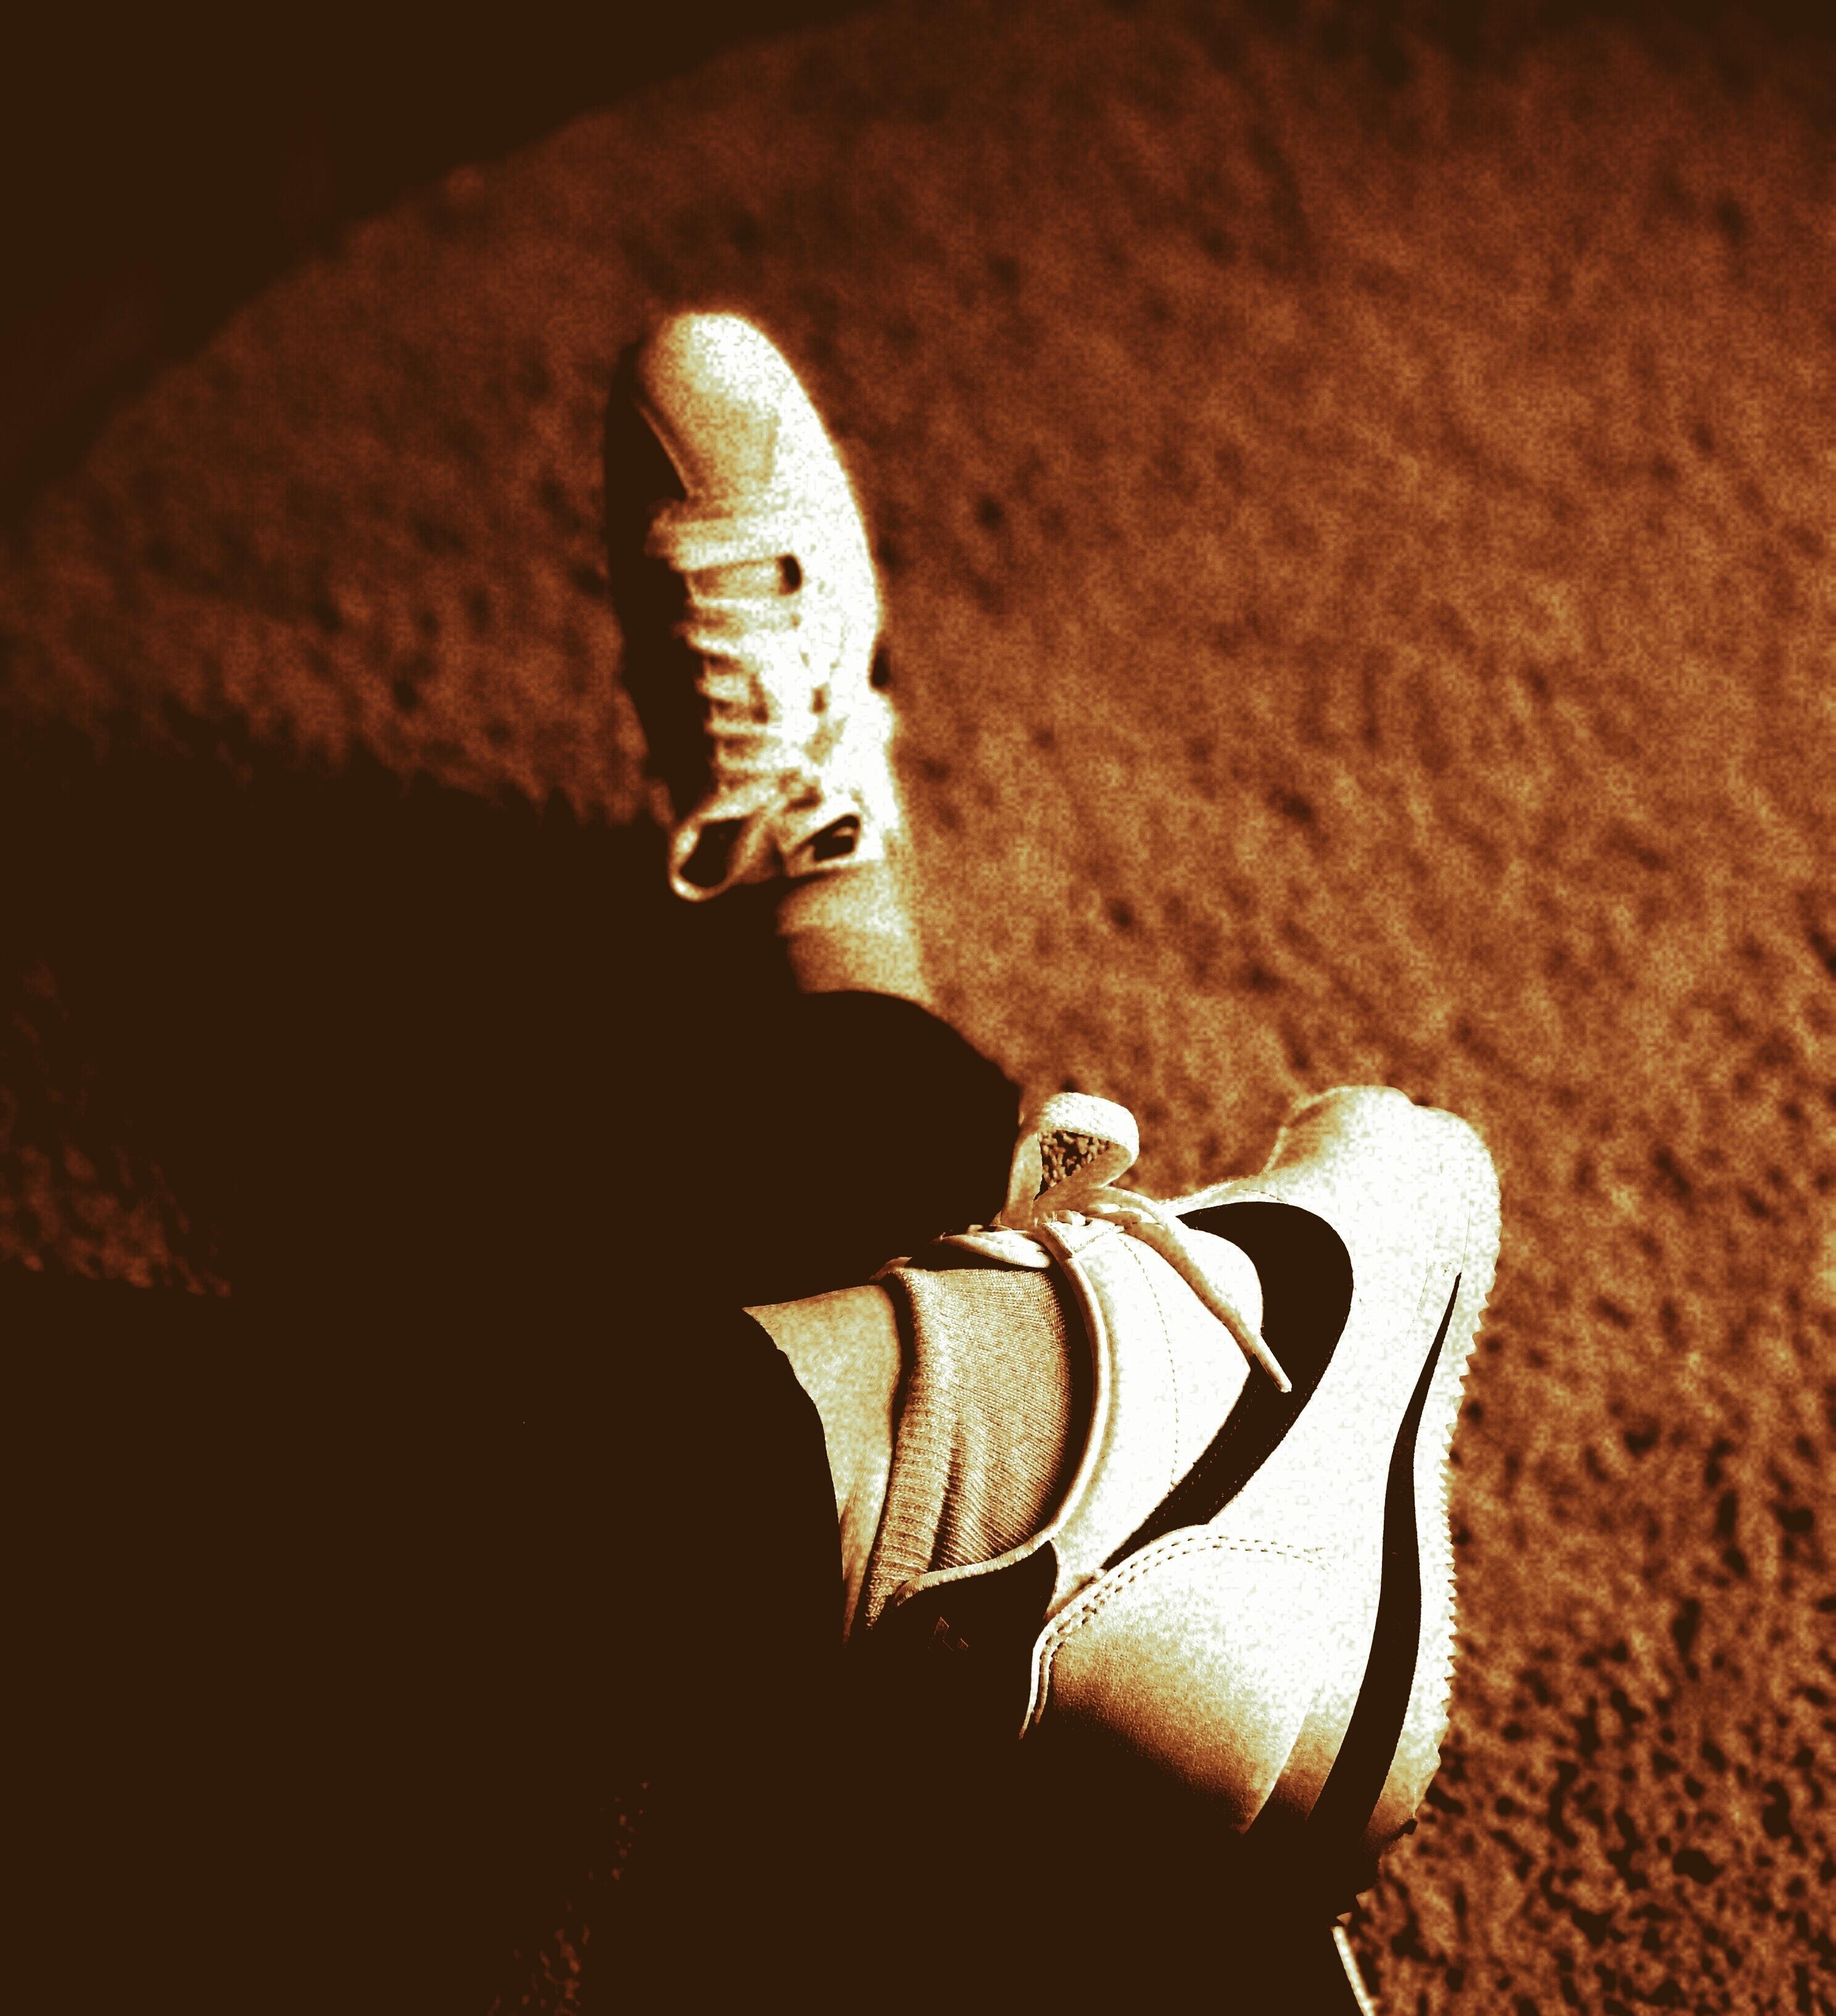 Klassiker! ✌️
#NikeCortez #Sneaker 